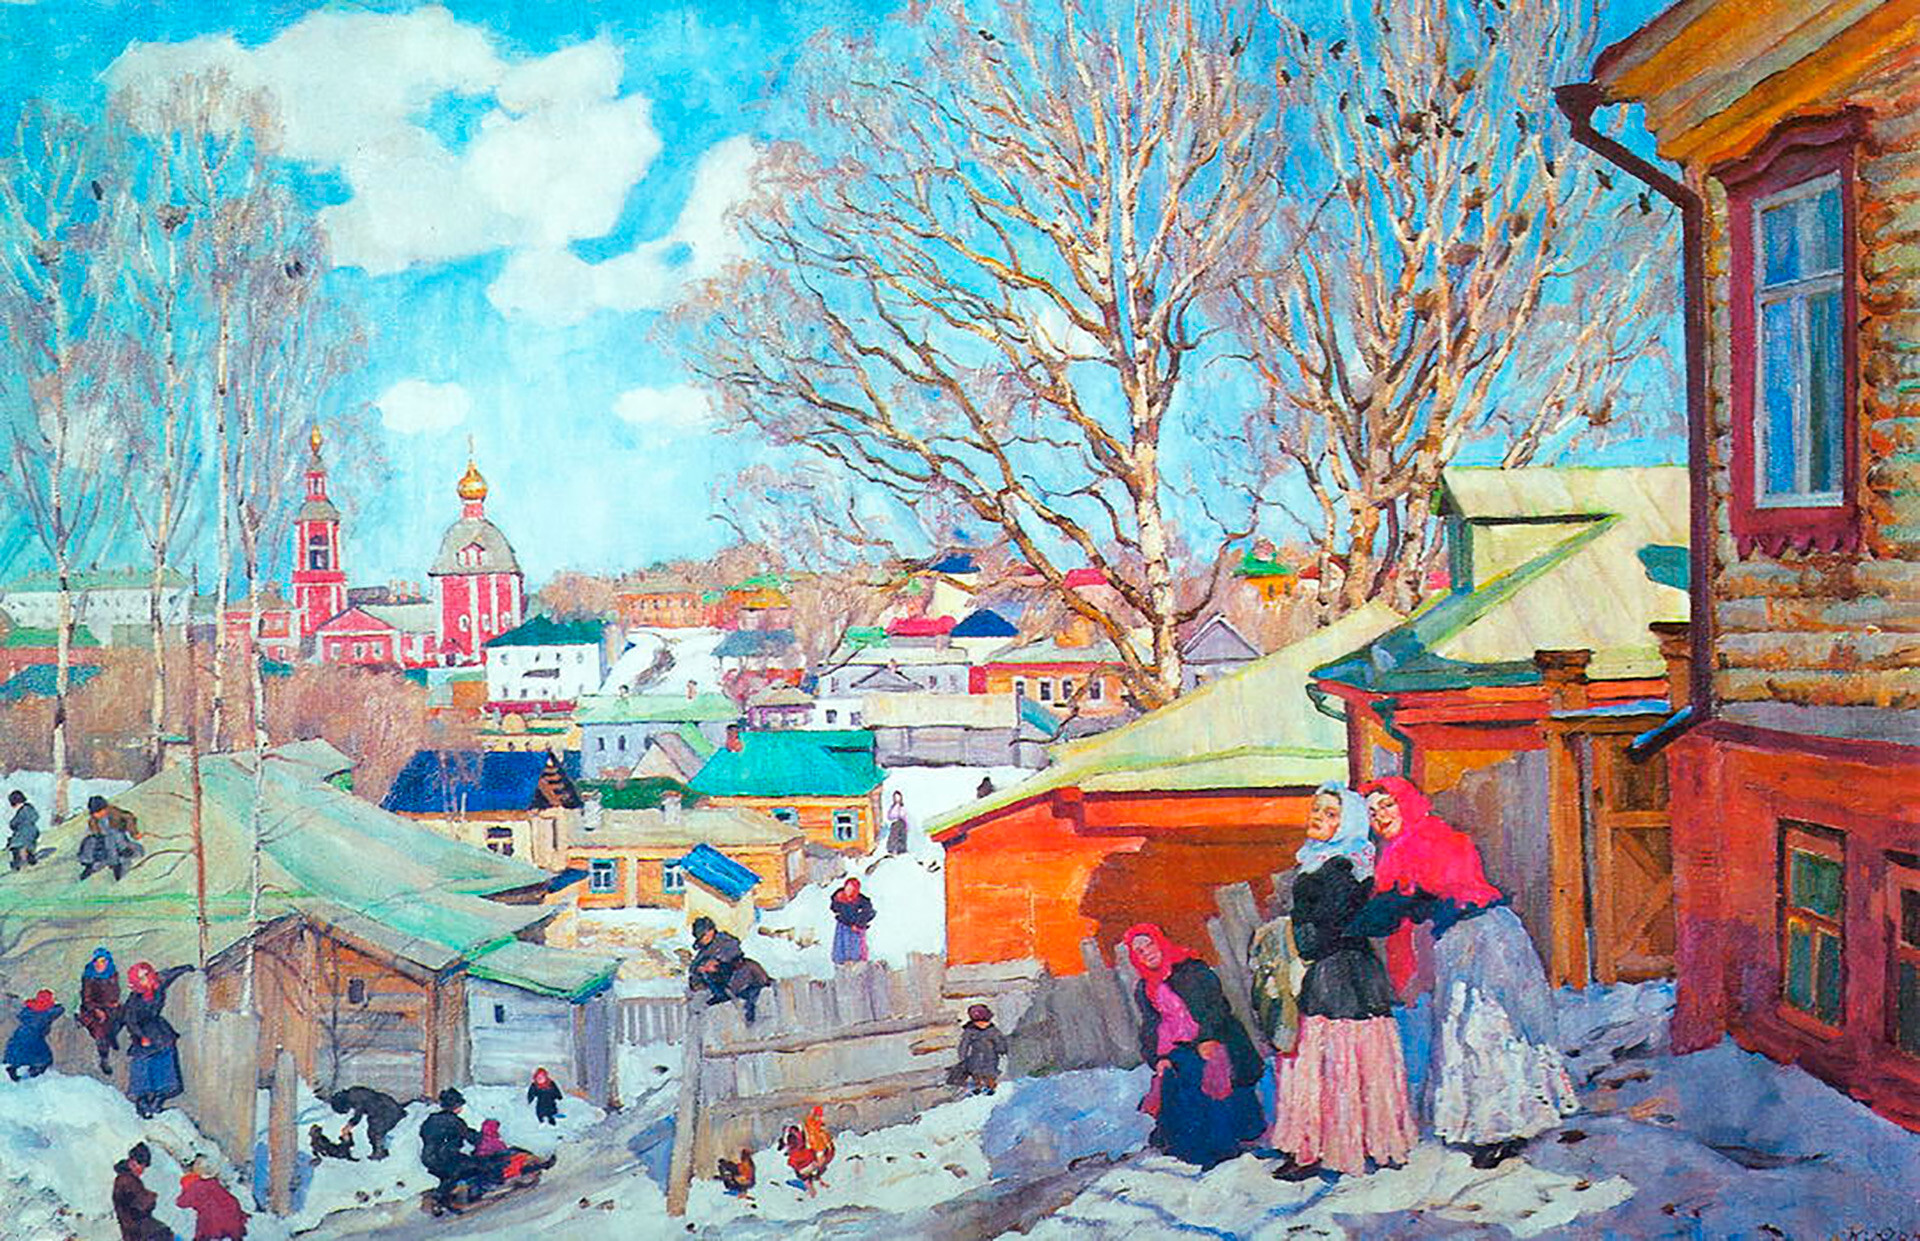 “Día de primavera con sol”, 1910, Konstantín Yuon.

